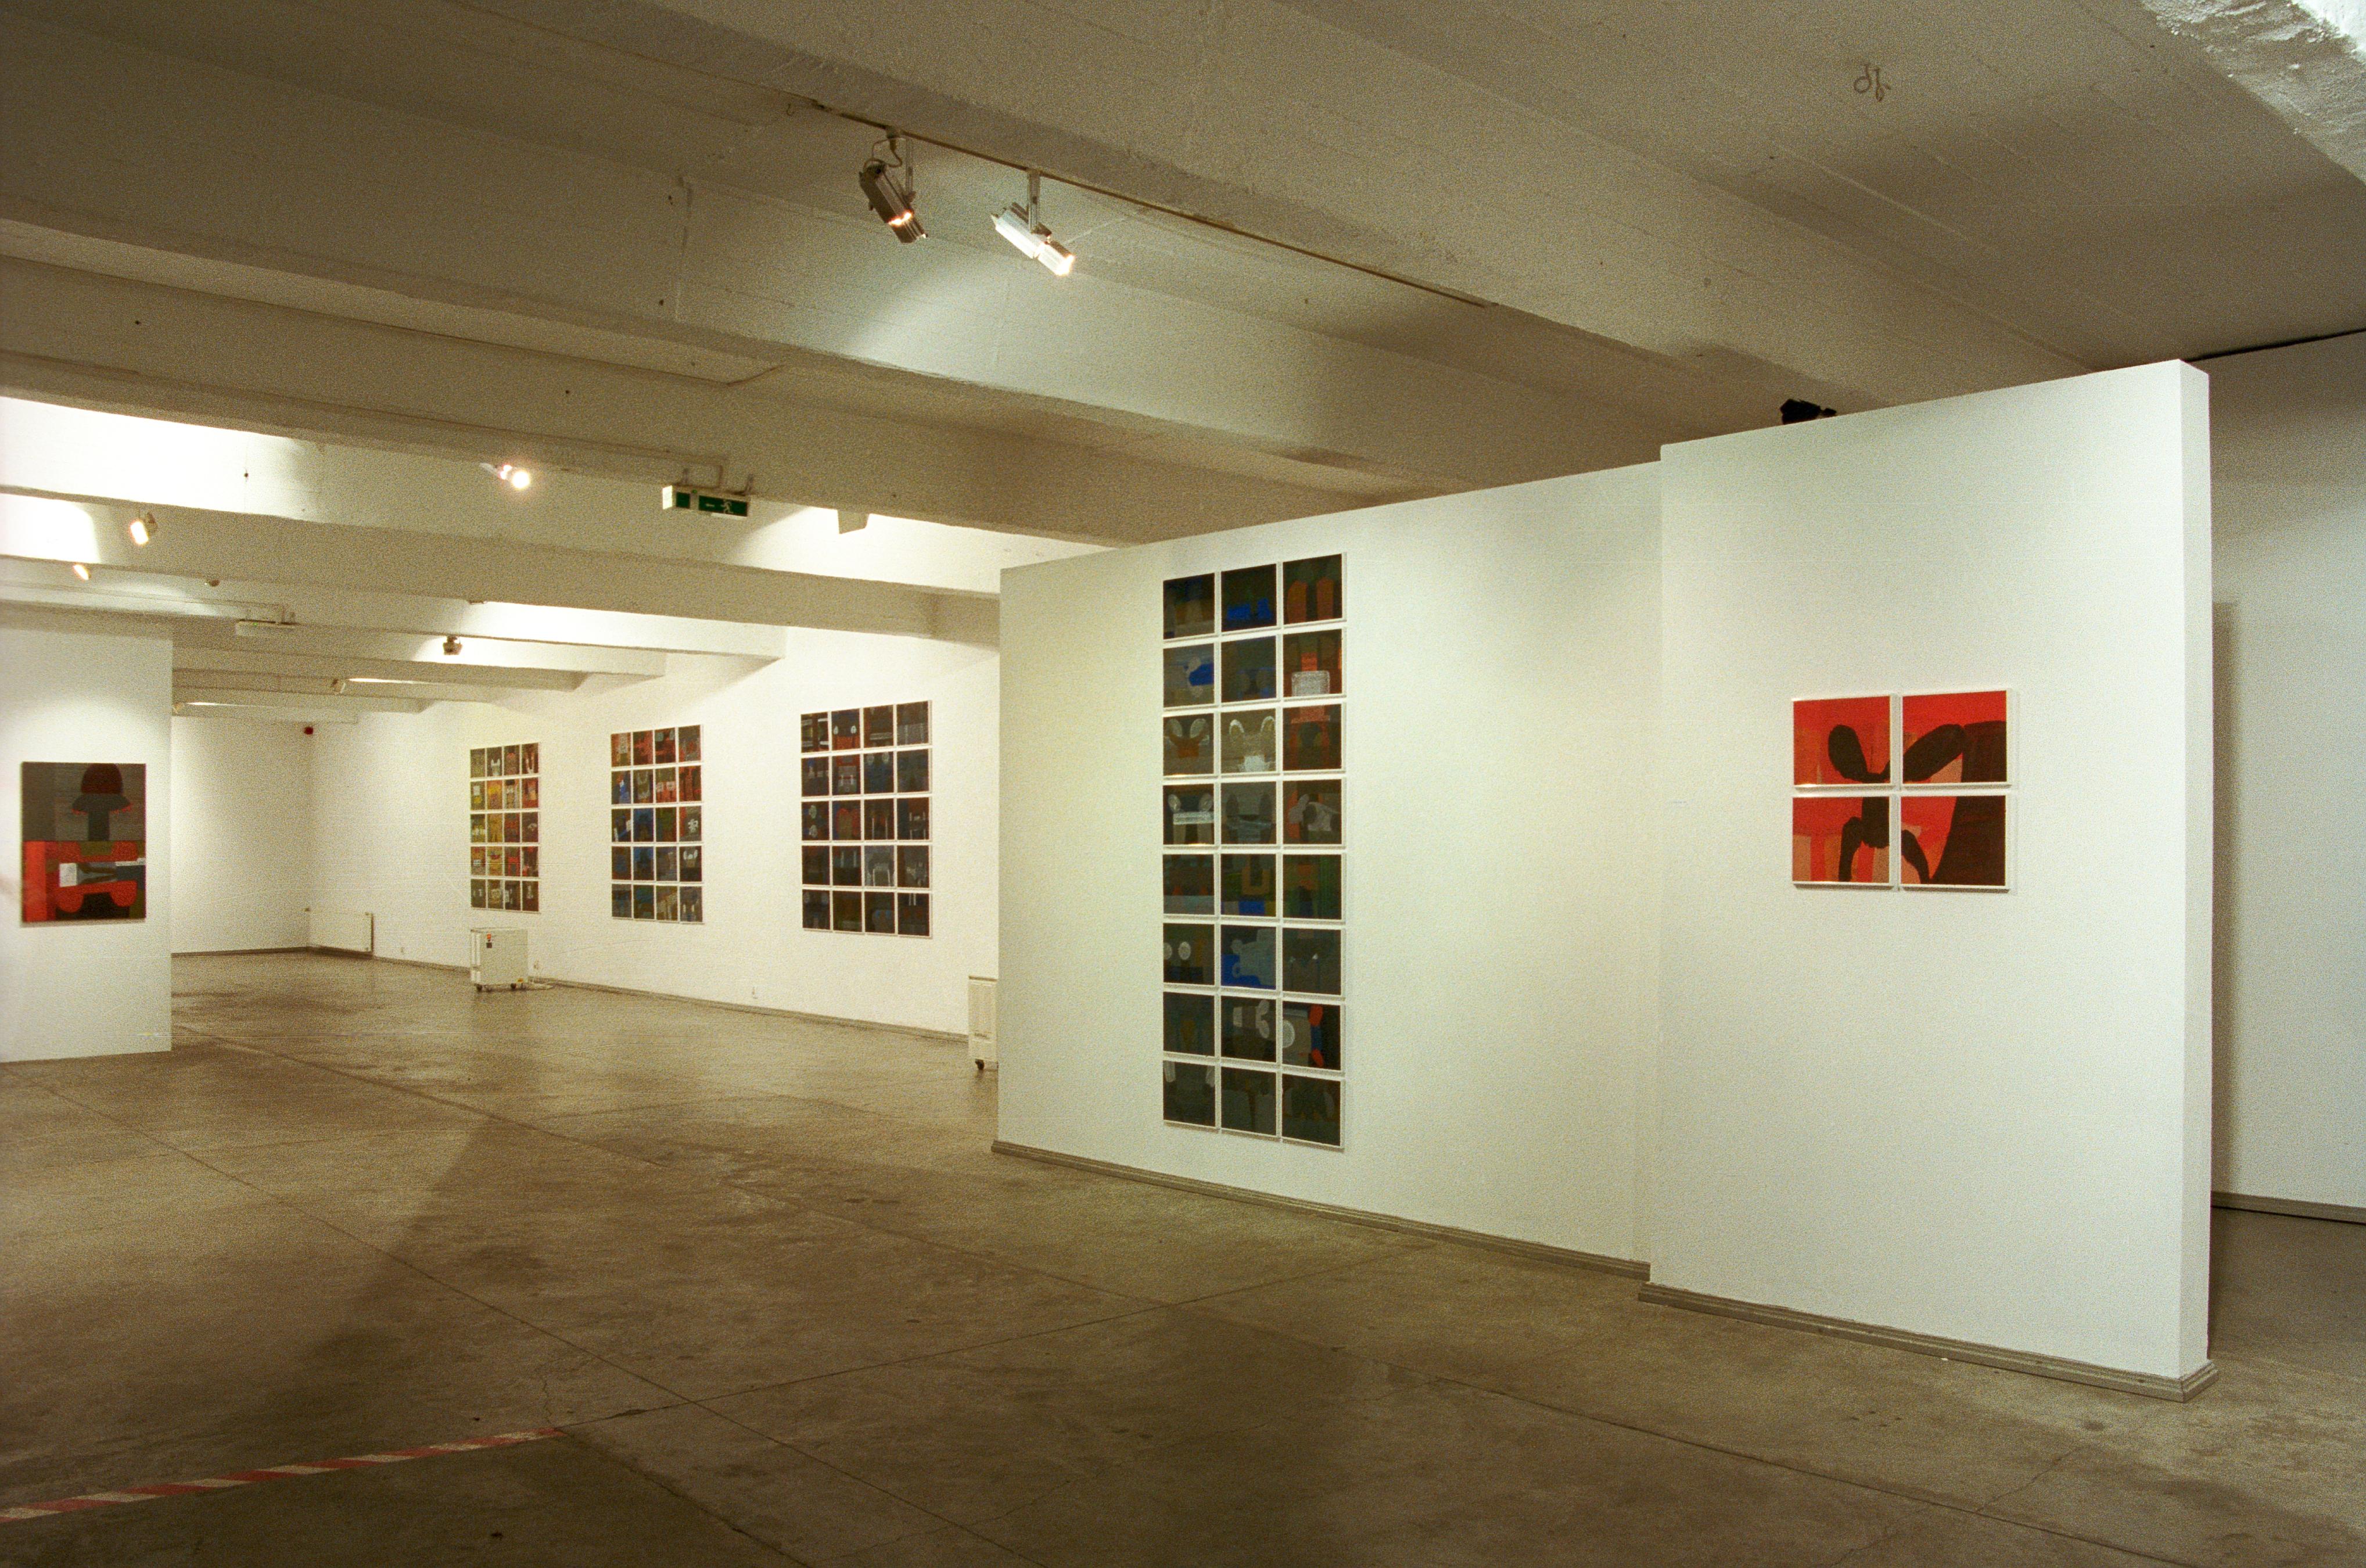 Dominika Krechowicz est professeur à l'Institut GUT de Gdansk.

Drapeaux 3,  213 x 96 cm, acrylique, pigment sur papier, 1999, composé de 24 éléments, une seule partie fait 24 x 30 cm.
Les œuvres de la série Flags ont été créées entre 1996 et 2000.